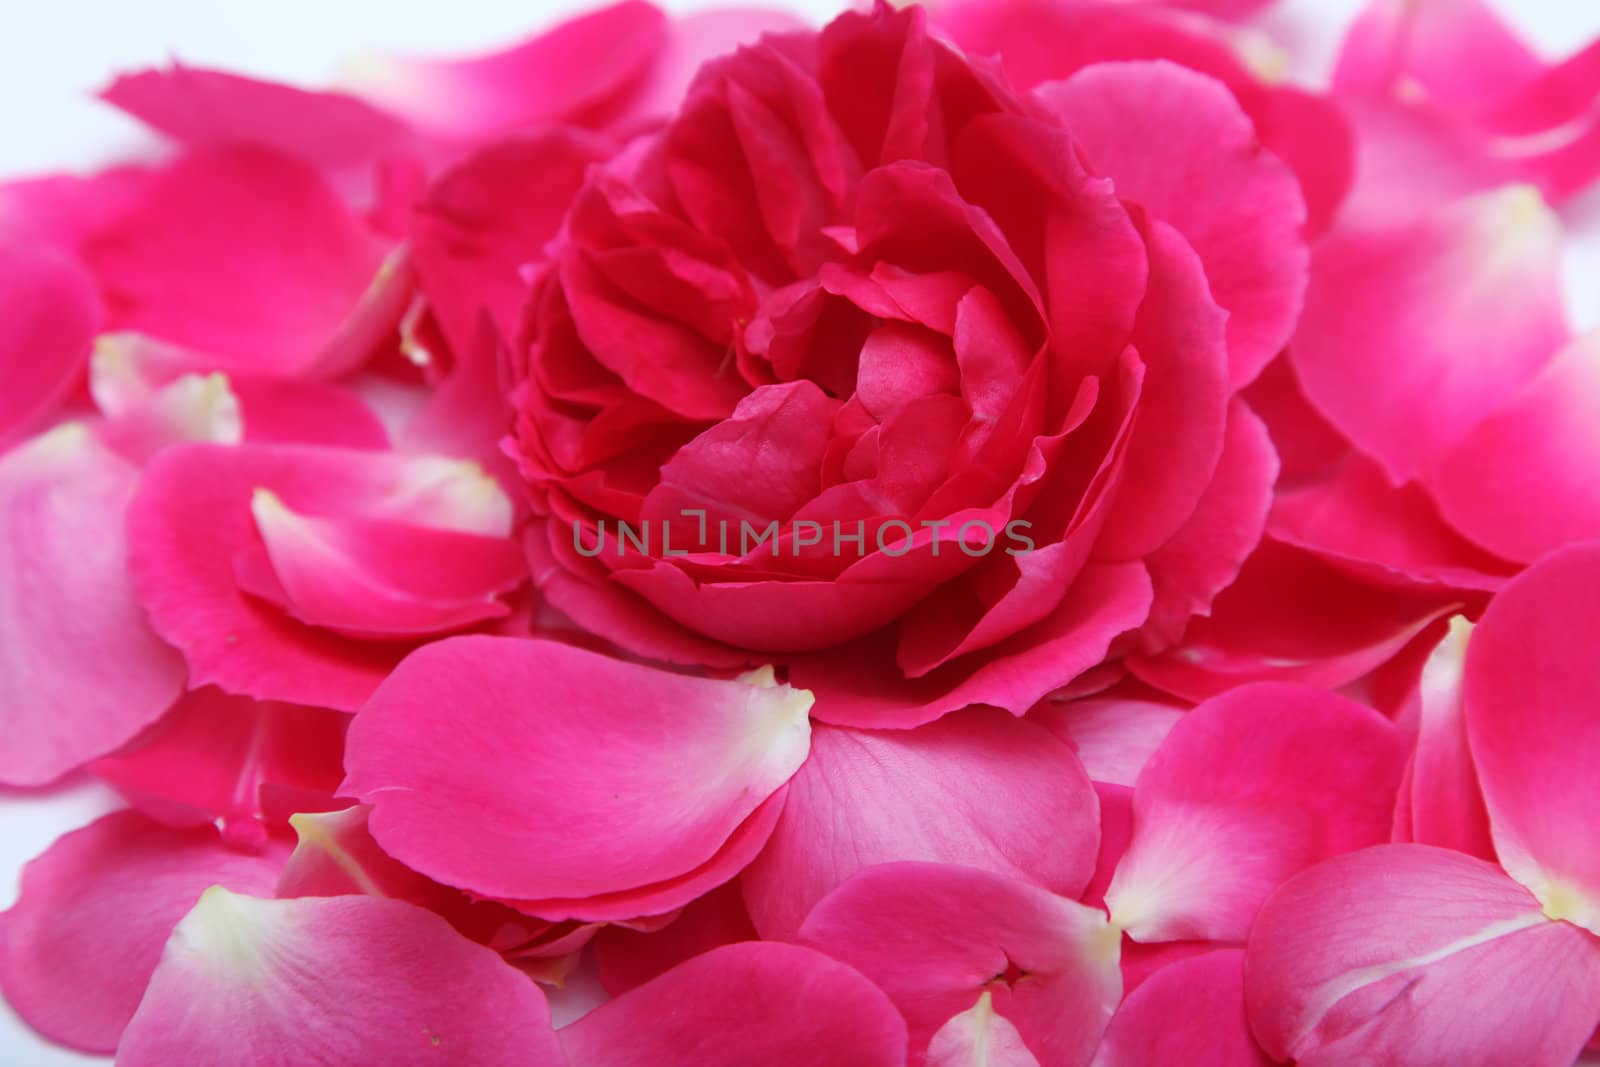 Rose petals, close-up